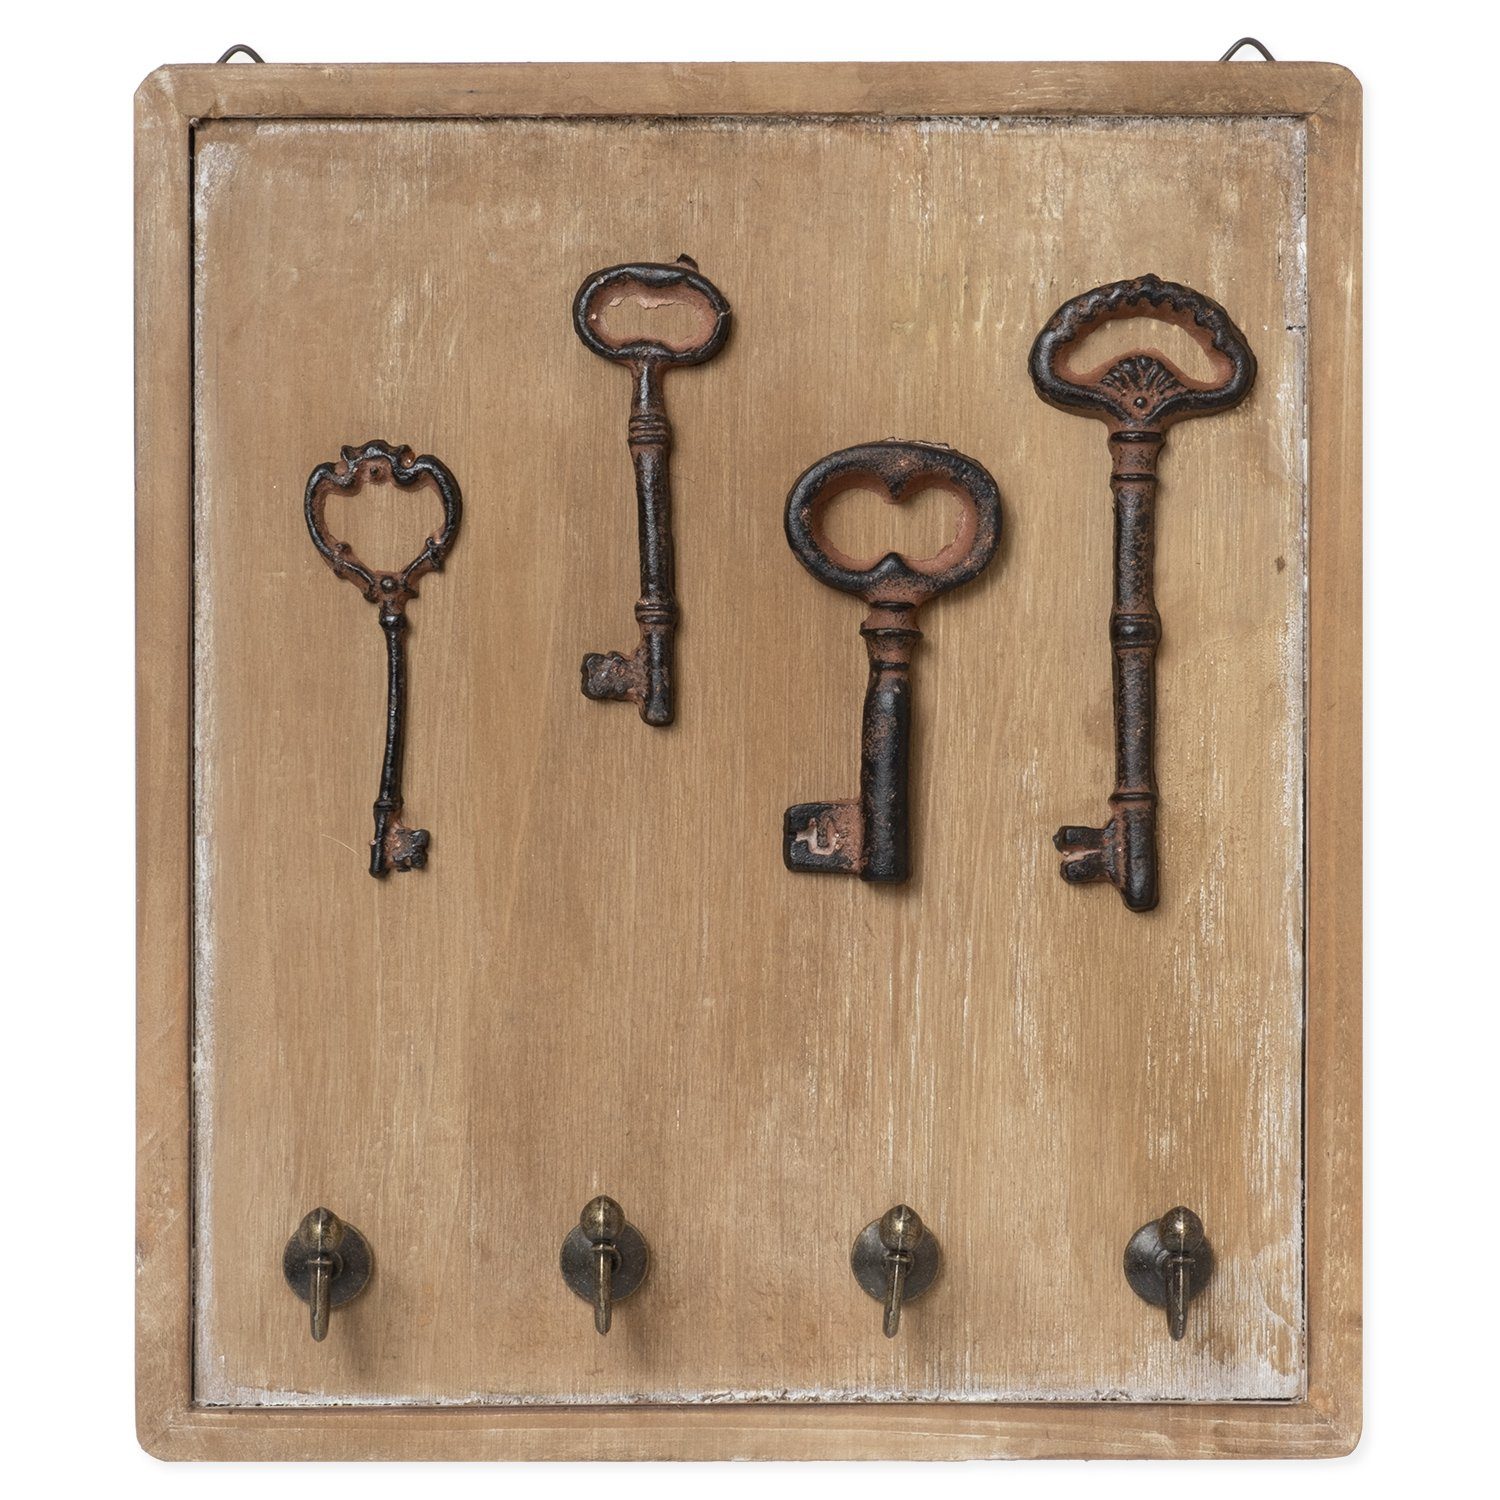 Moritz Schlüsselbrett 22x25cm Antike Schlüssel 4 Haken braun,  Schlüsselkasten Vintage Schlüsselbox Schlüsselleiste Schlüsselhaken